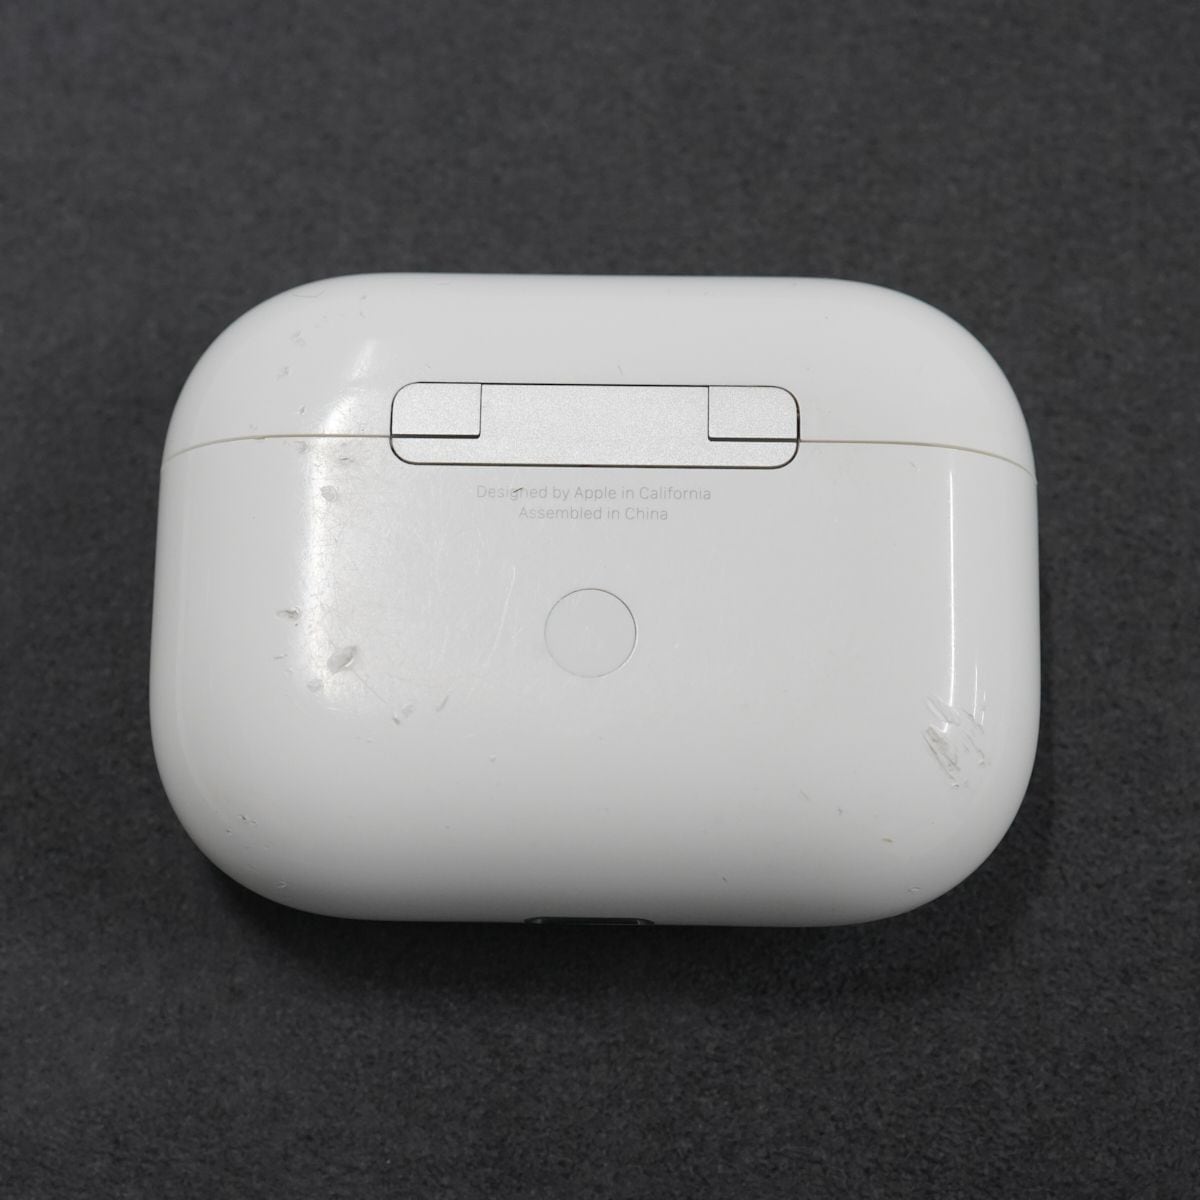 Apple AirPods Pro ワイヤレスイヤホン USED美品 第一世代 耐汗